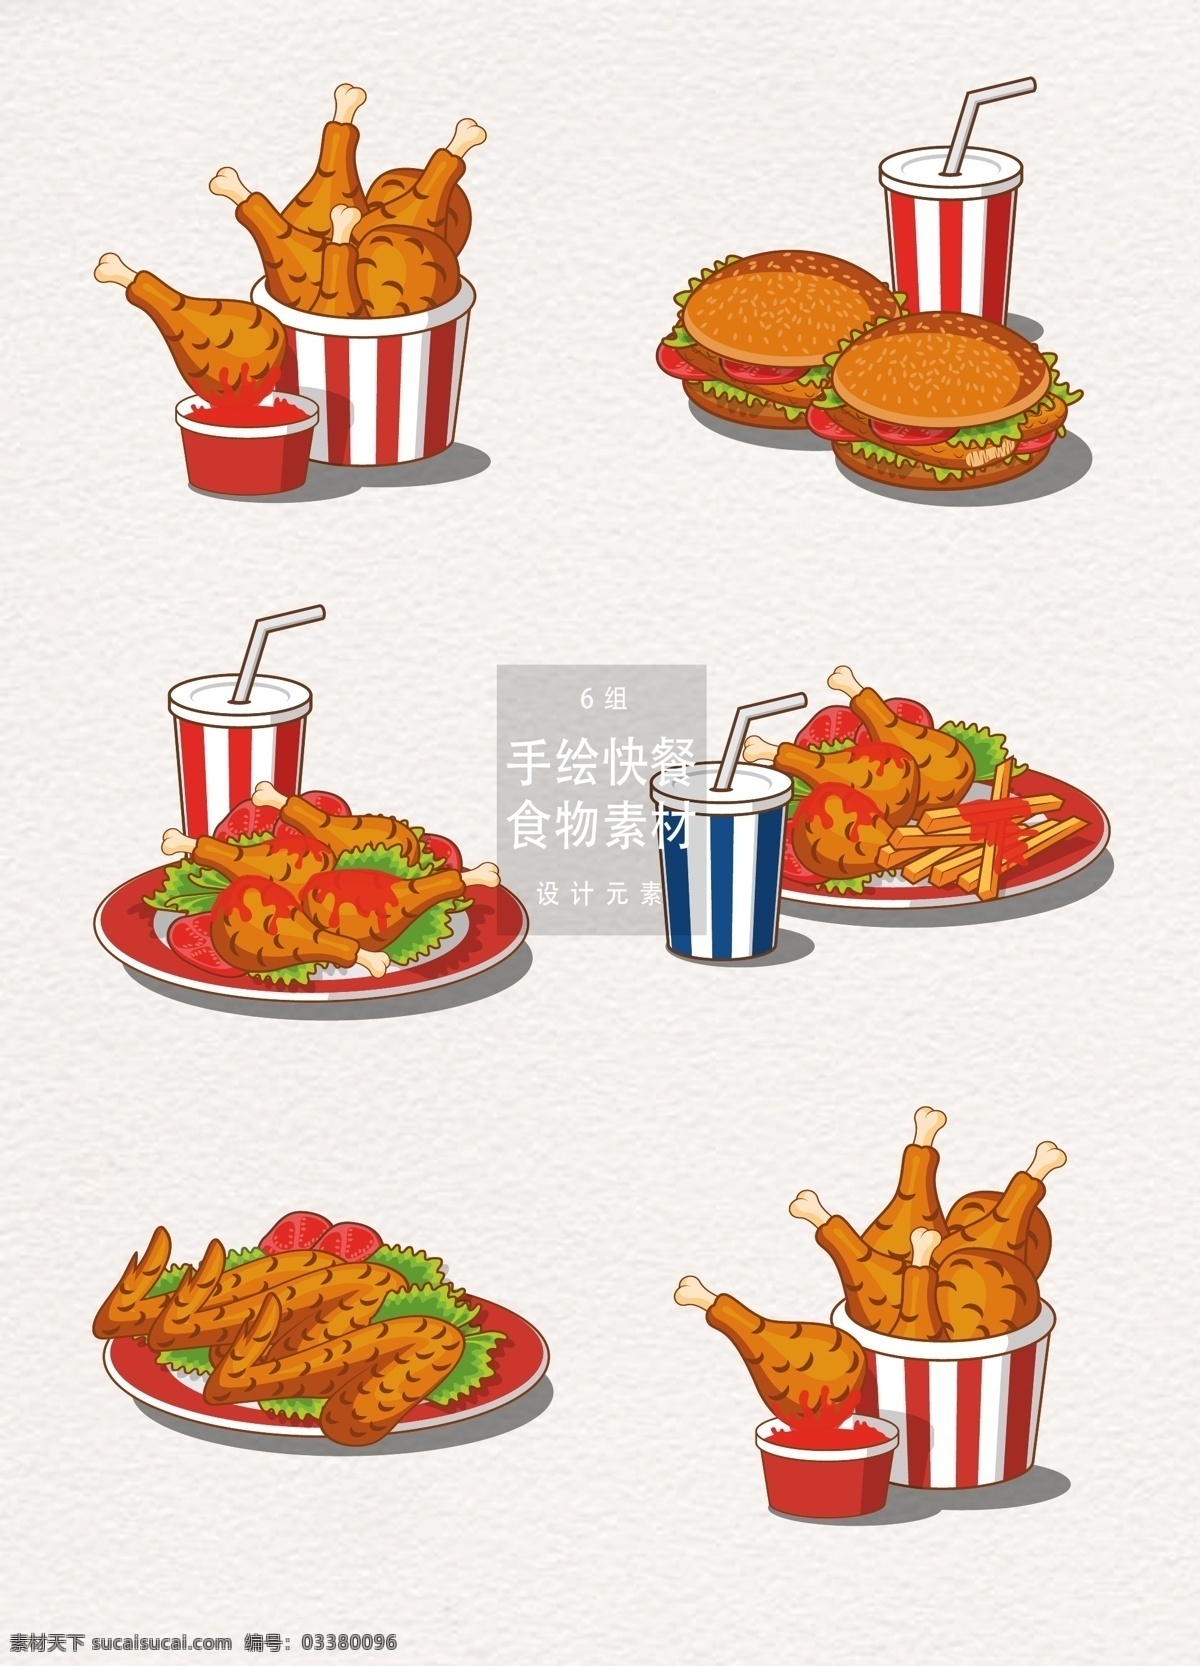 手绘 快餐 食物 炸鸡 元素 手绘食物 设计元素 鸡 鸡腿 手绘炸鸡 快餐食物 手绘快餐食物